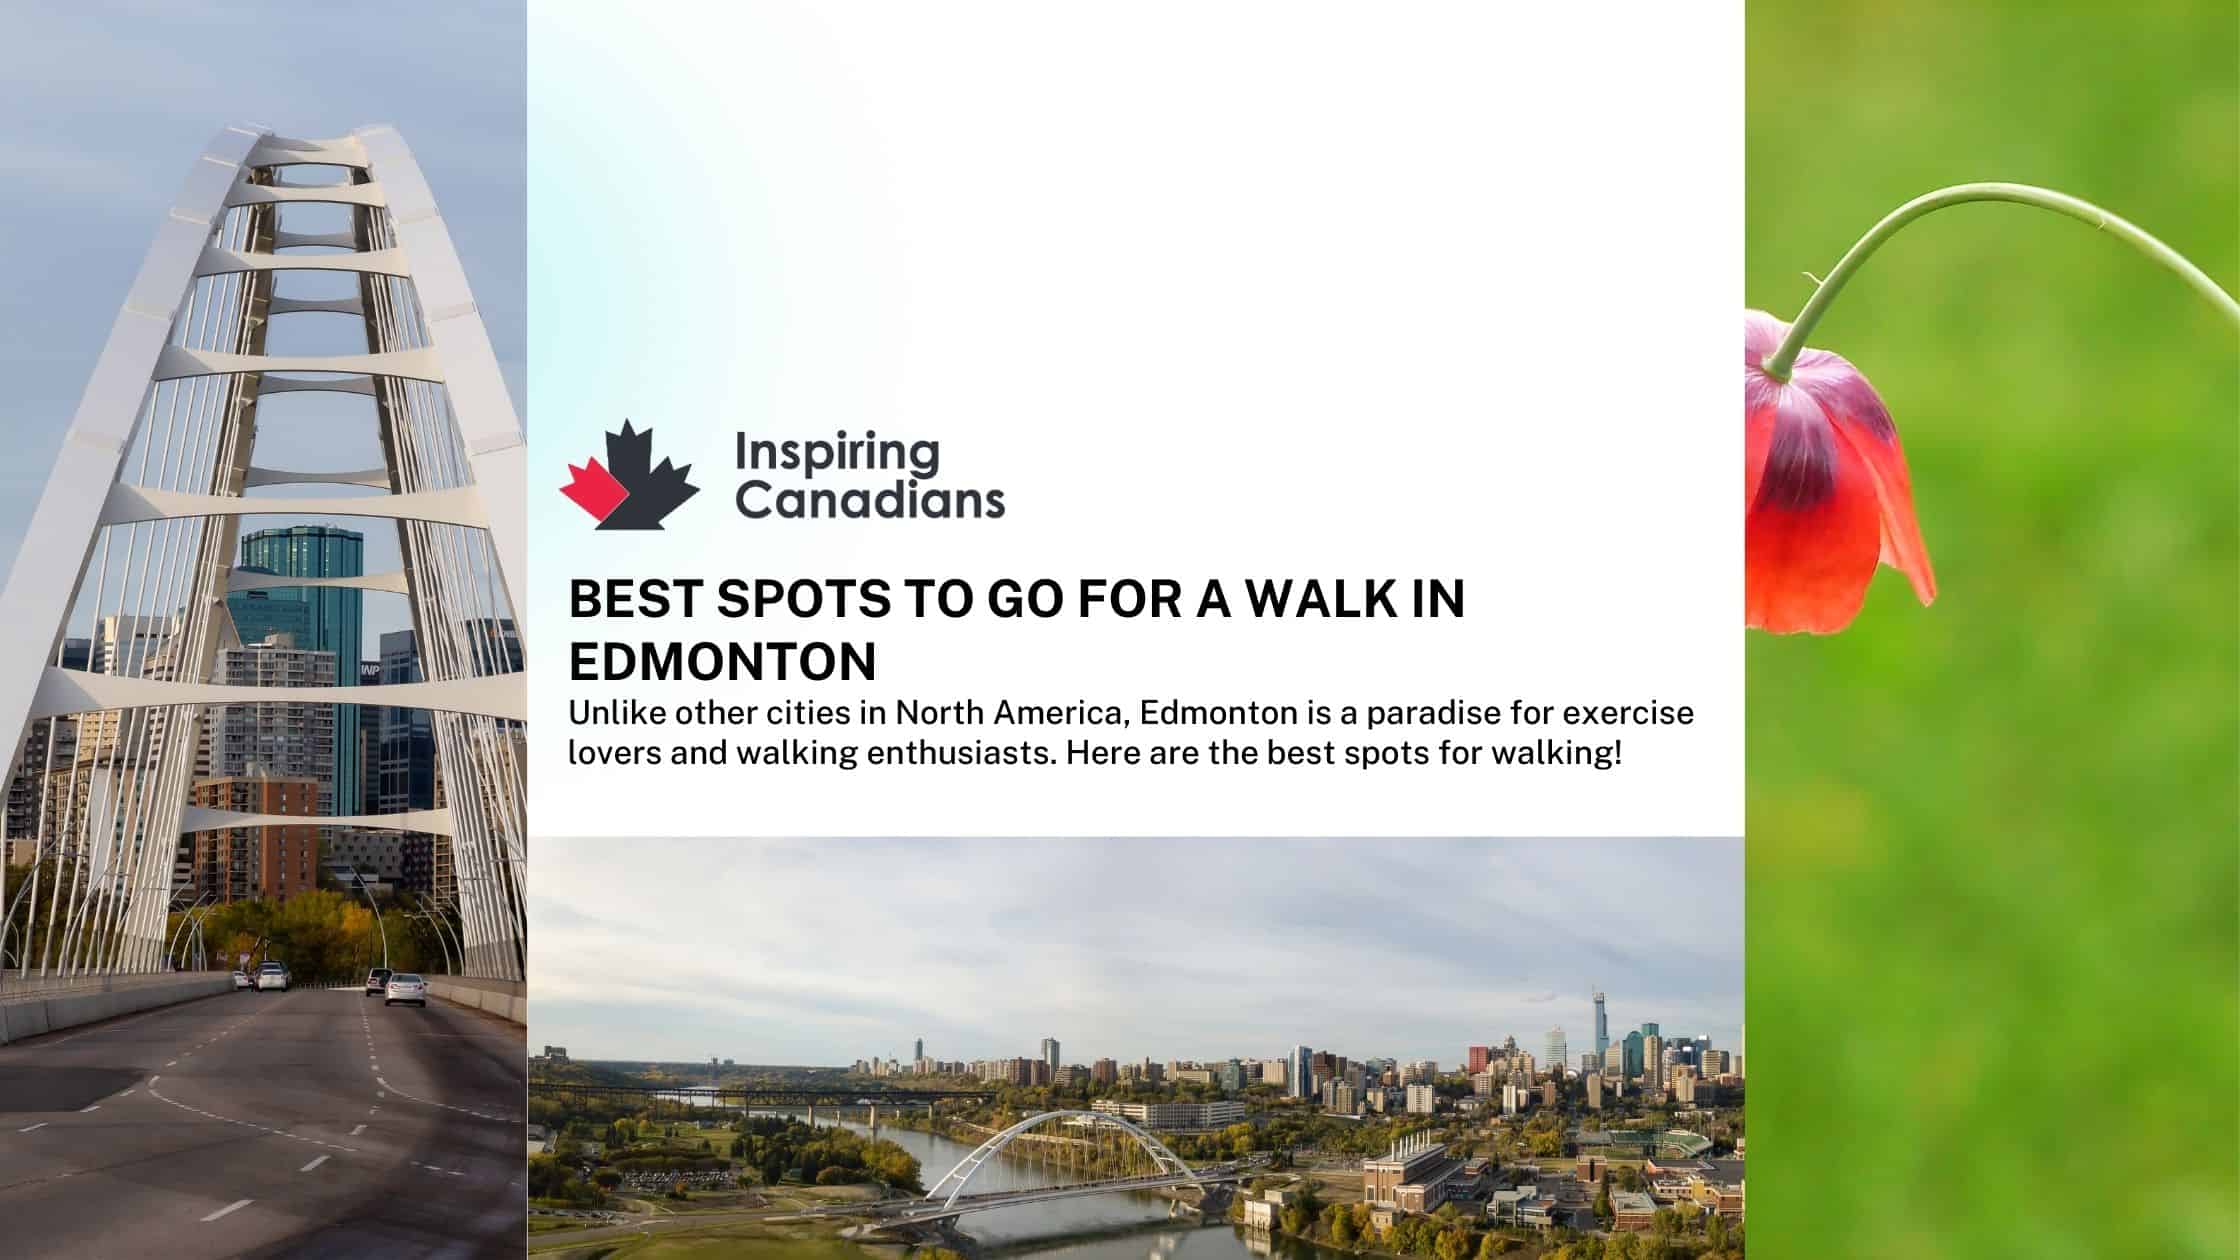 Best spots to go for a walk in Edmonton